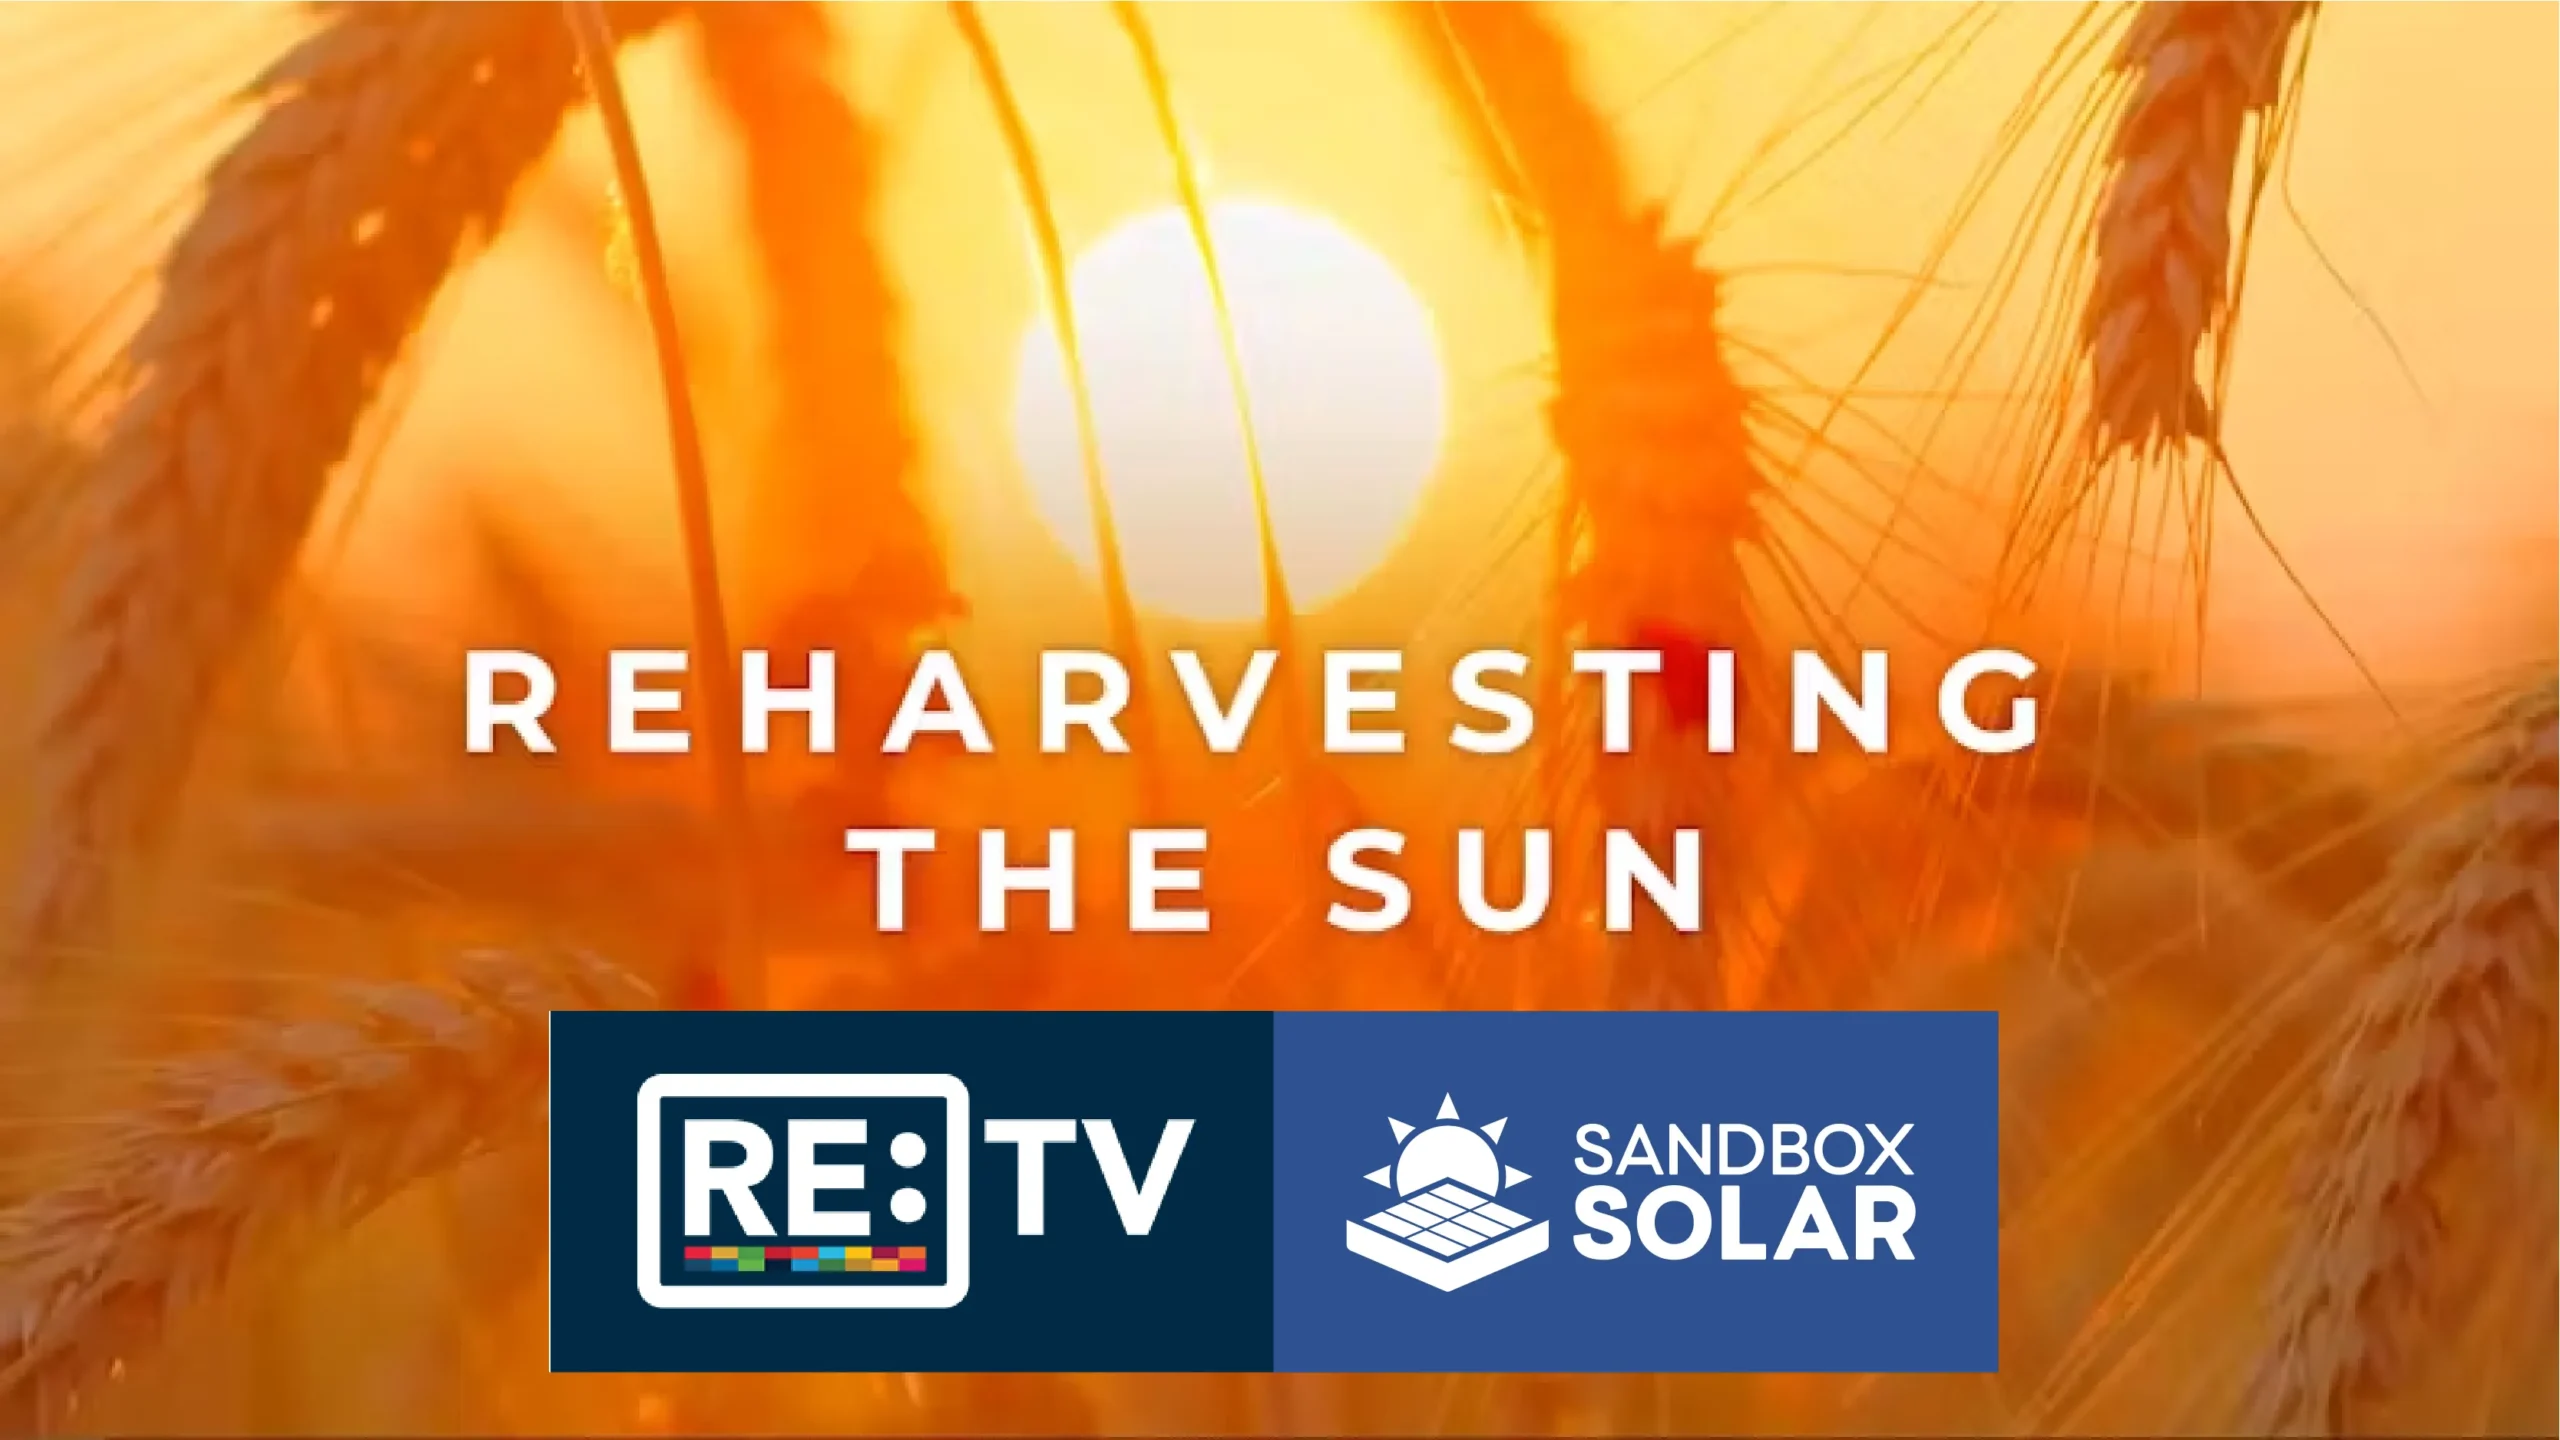 RE: TV Agrivoltaics Film Sandbox Solar